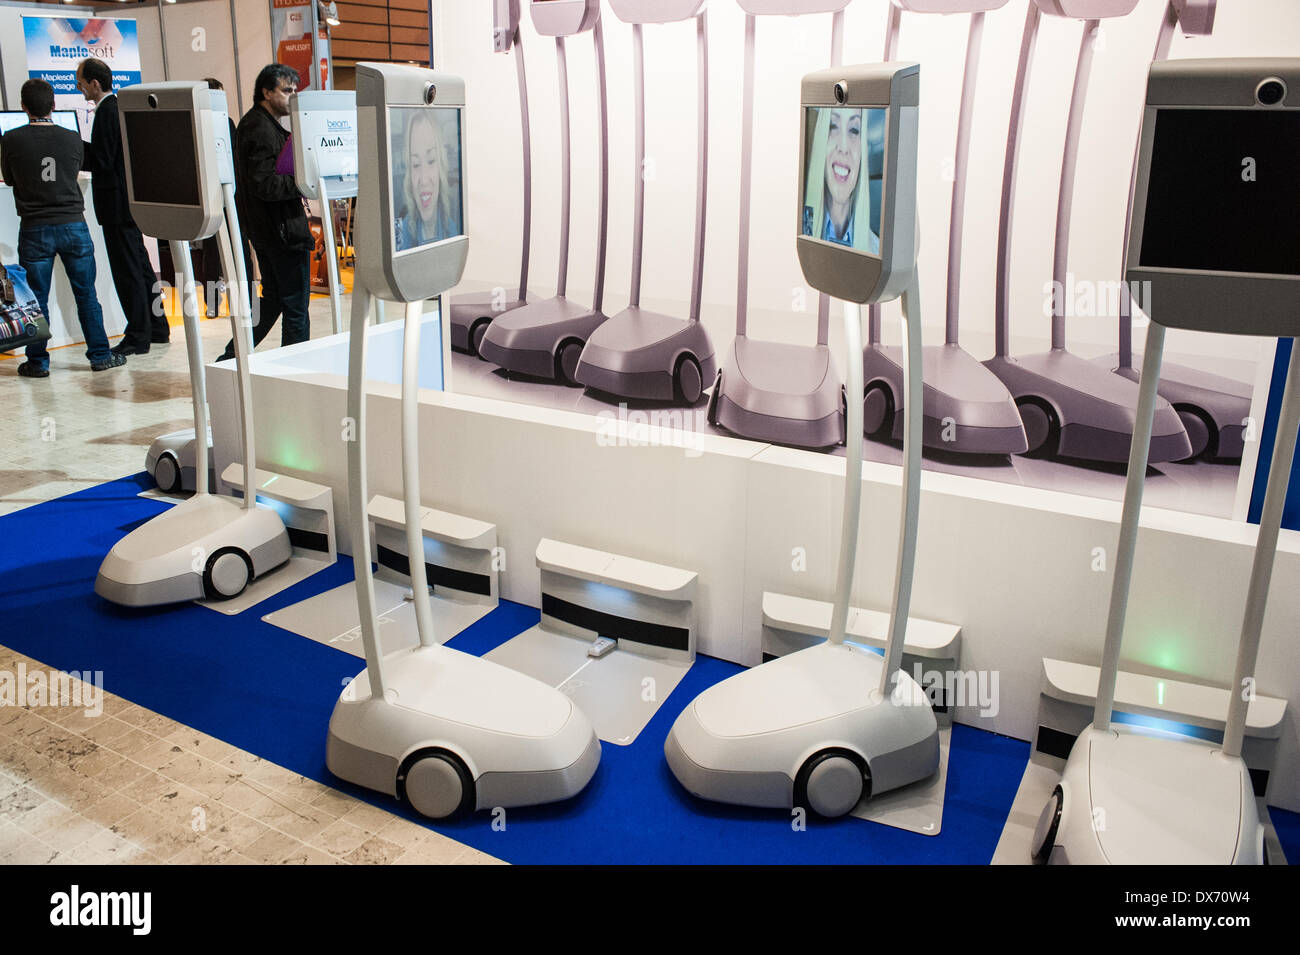 Lione, Francia - 19 Marzo 2014: due in remoto robot Awabot a Innorobo 2014, il 4° fiera internazionale specializzata sulla robotica di servizio. Credito: Piero Cruciatti/Alamy Live News Foto Stock